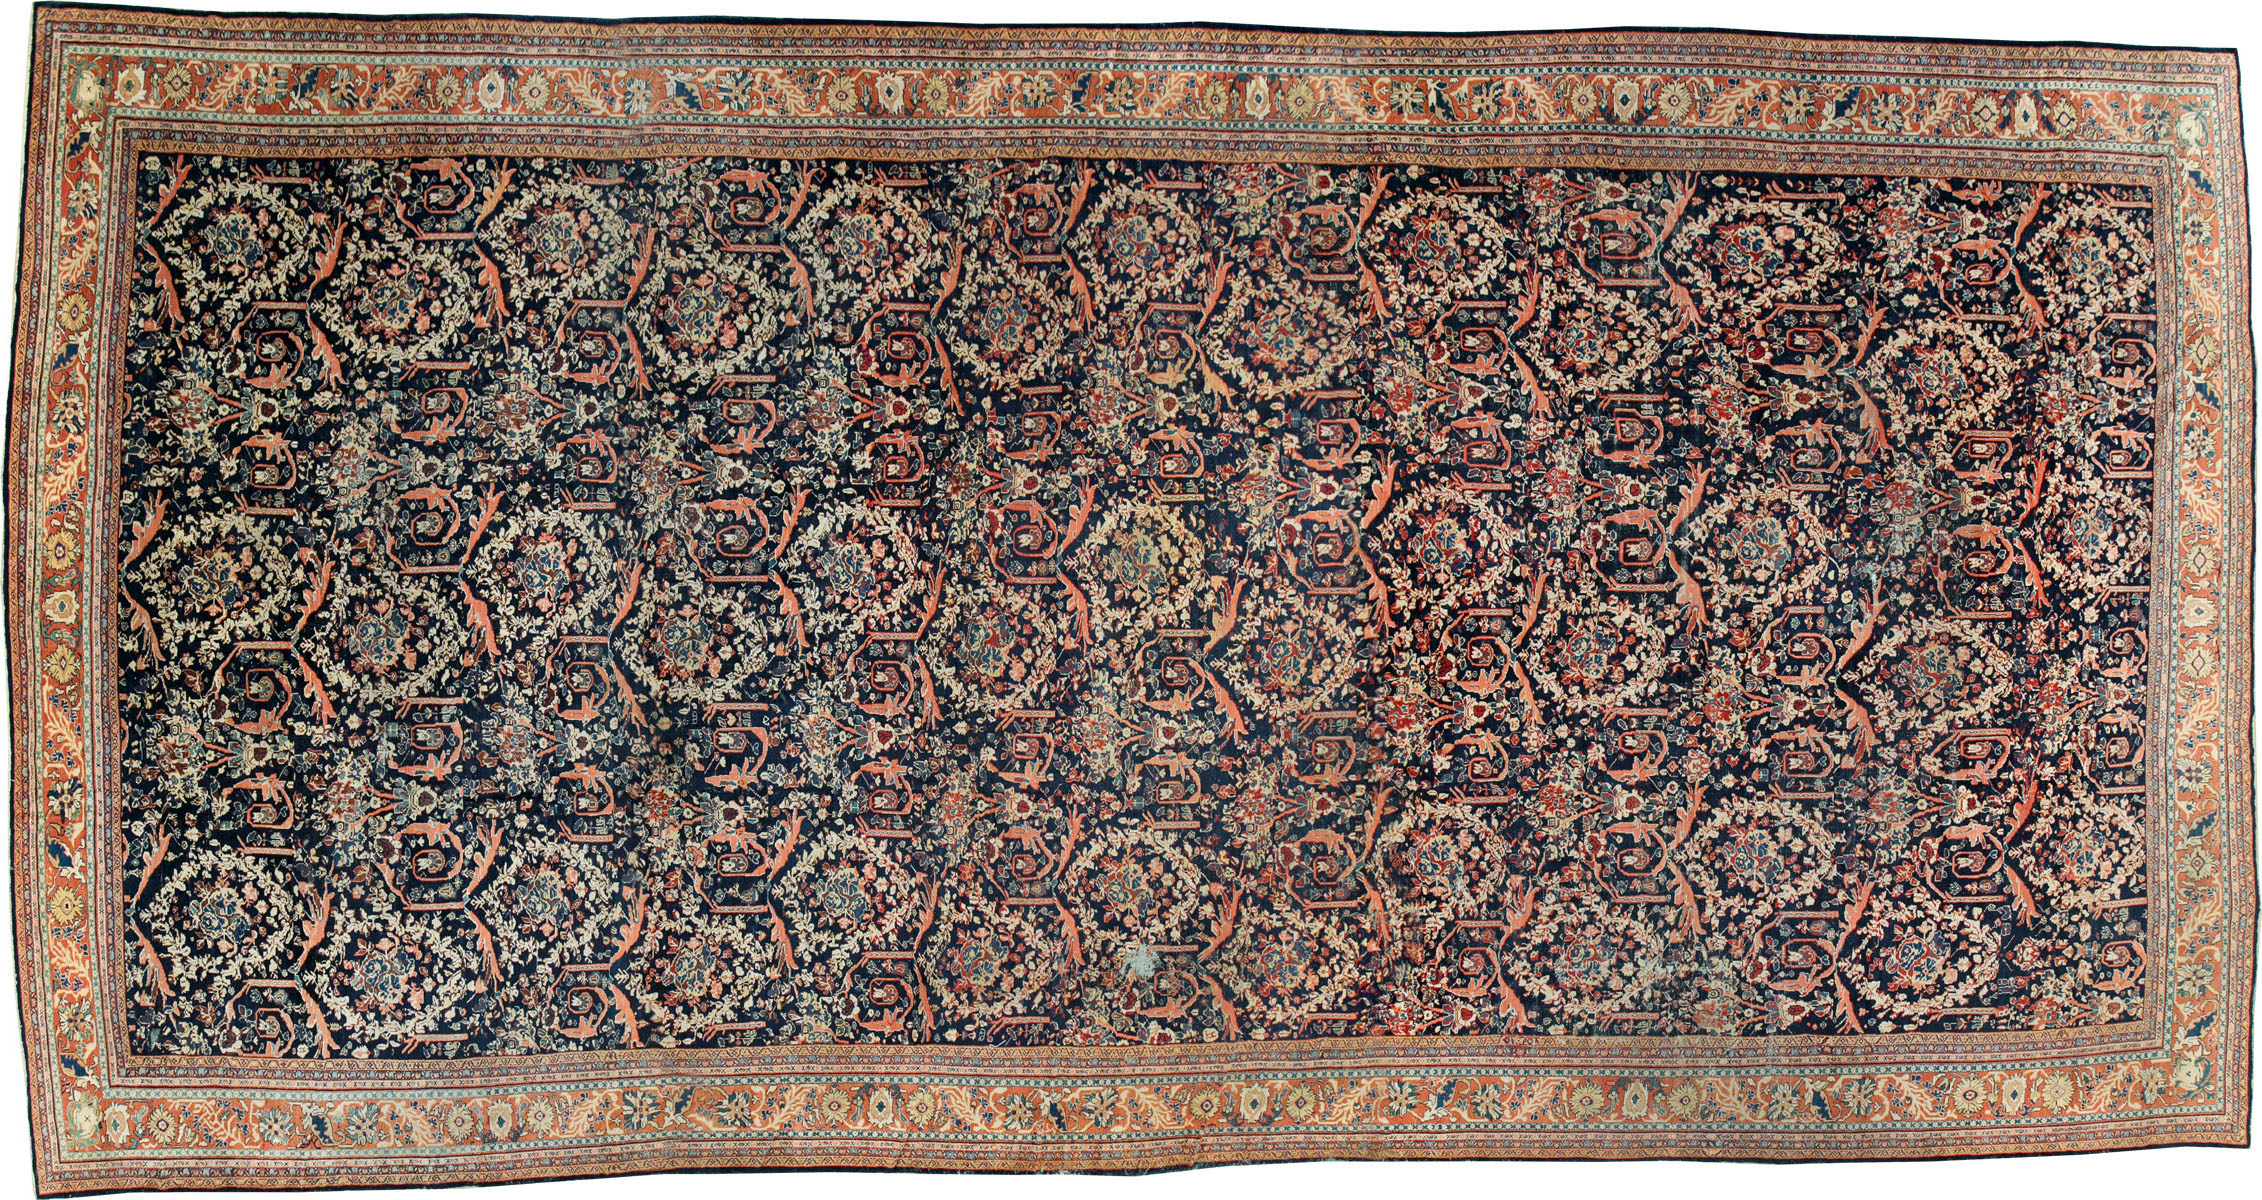 Antique mahal Carpet - # 53808